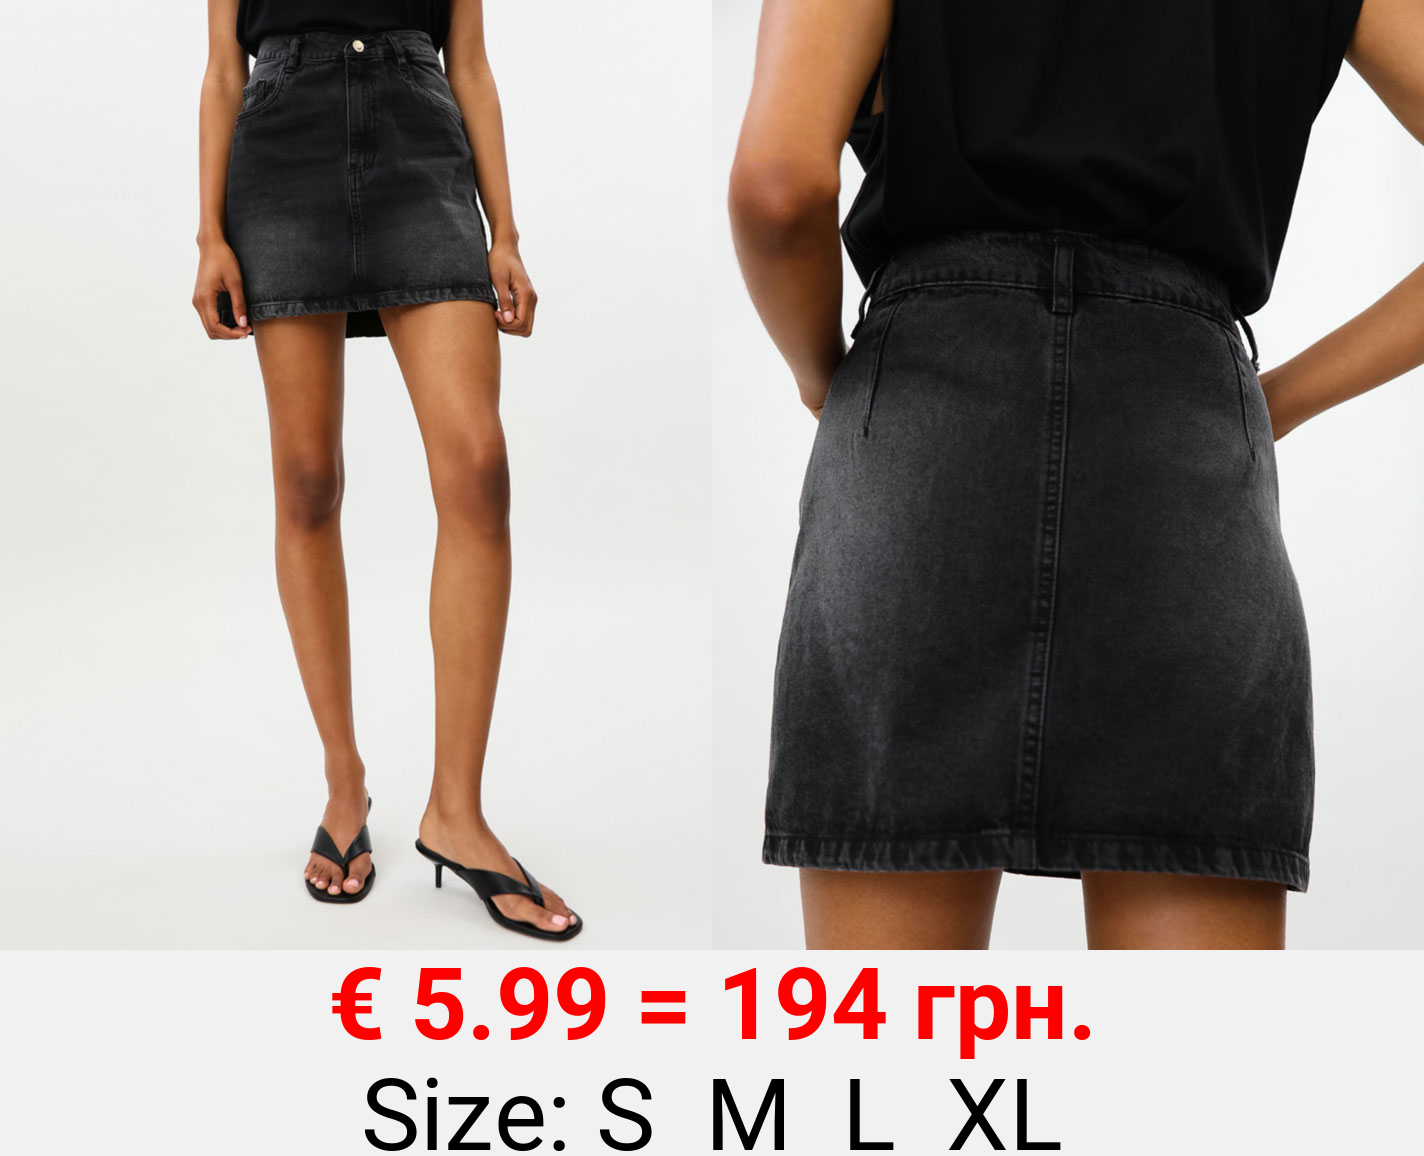 Short denim skirt